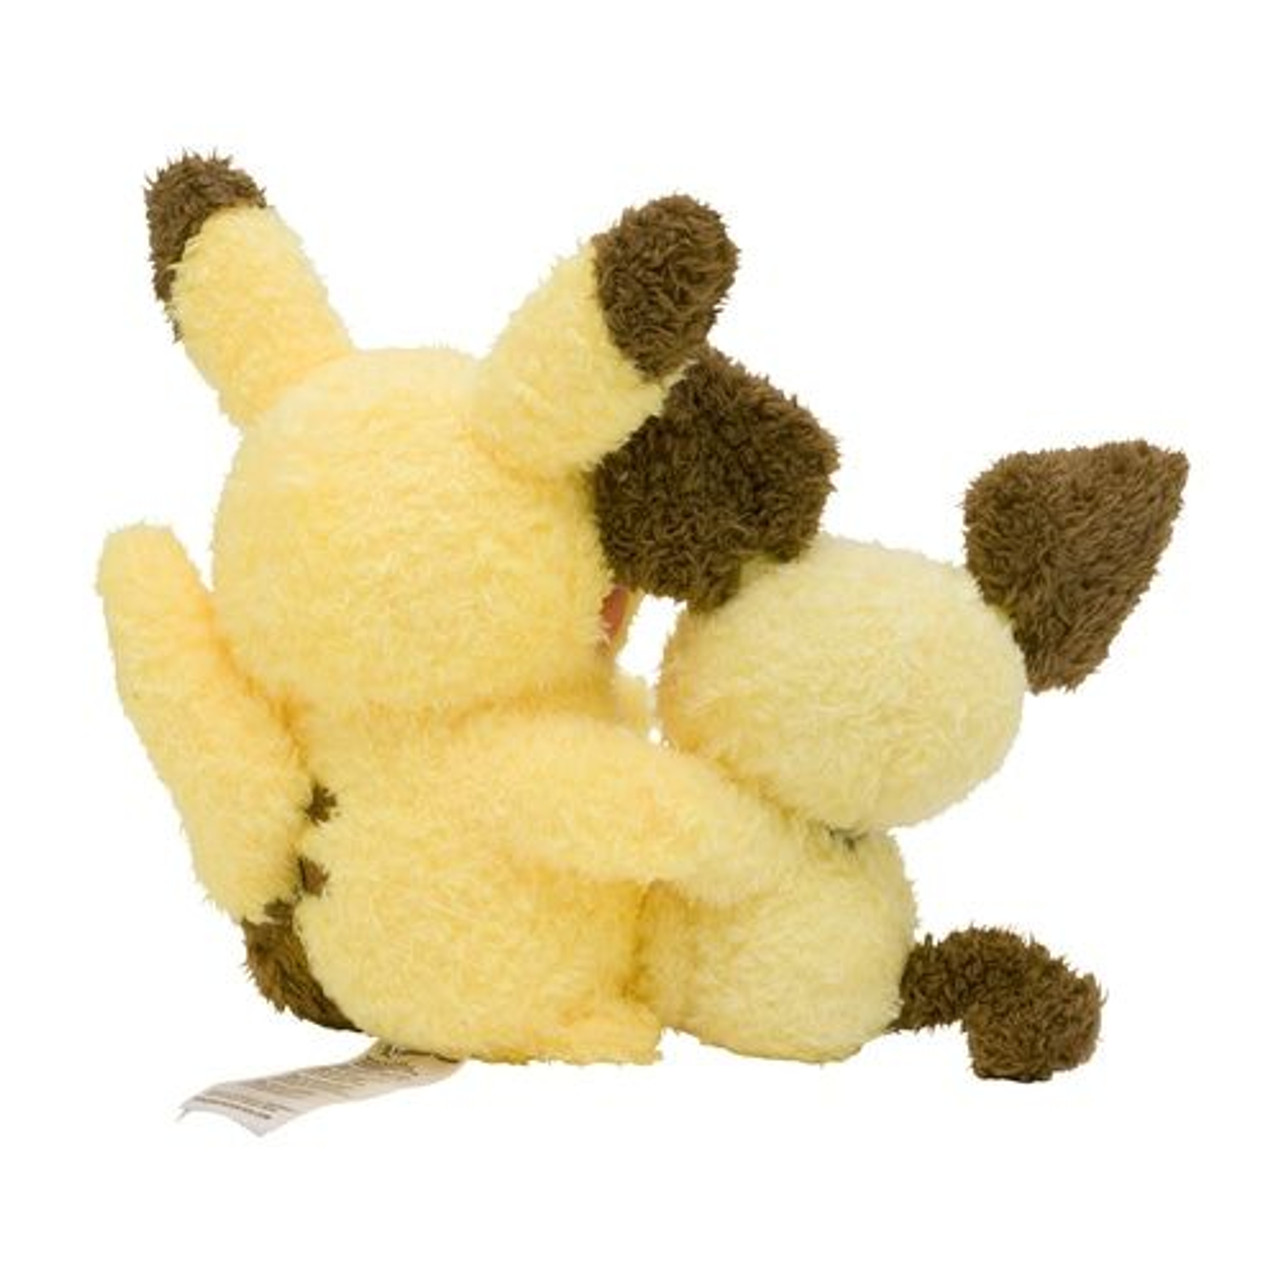 Pikachu plush backpack • Magic Plush